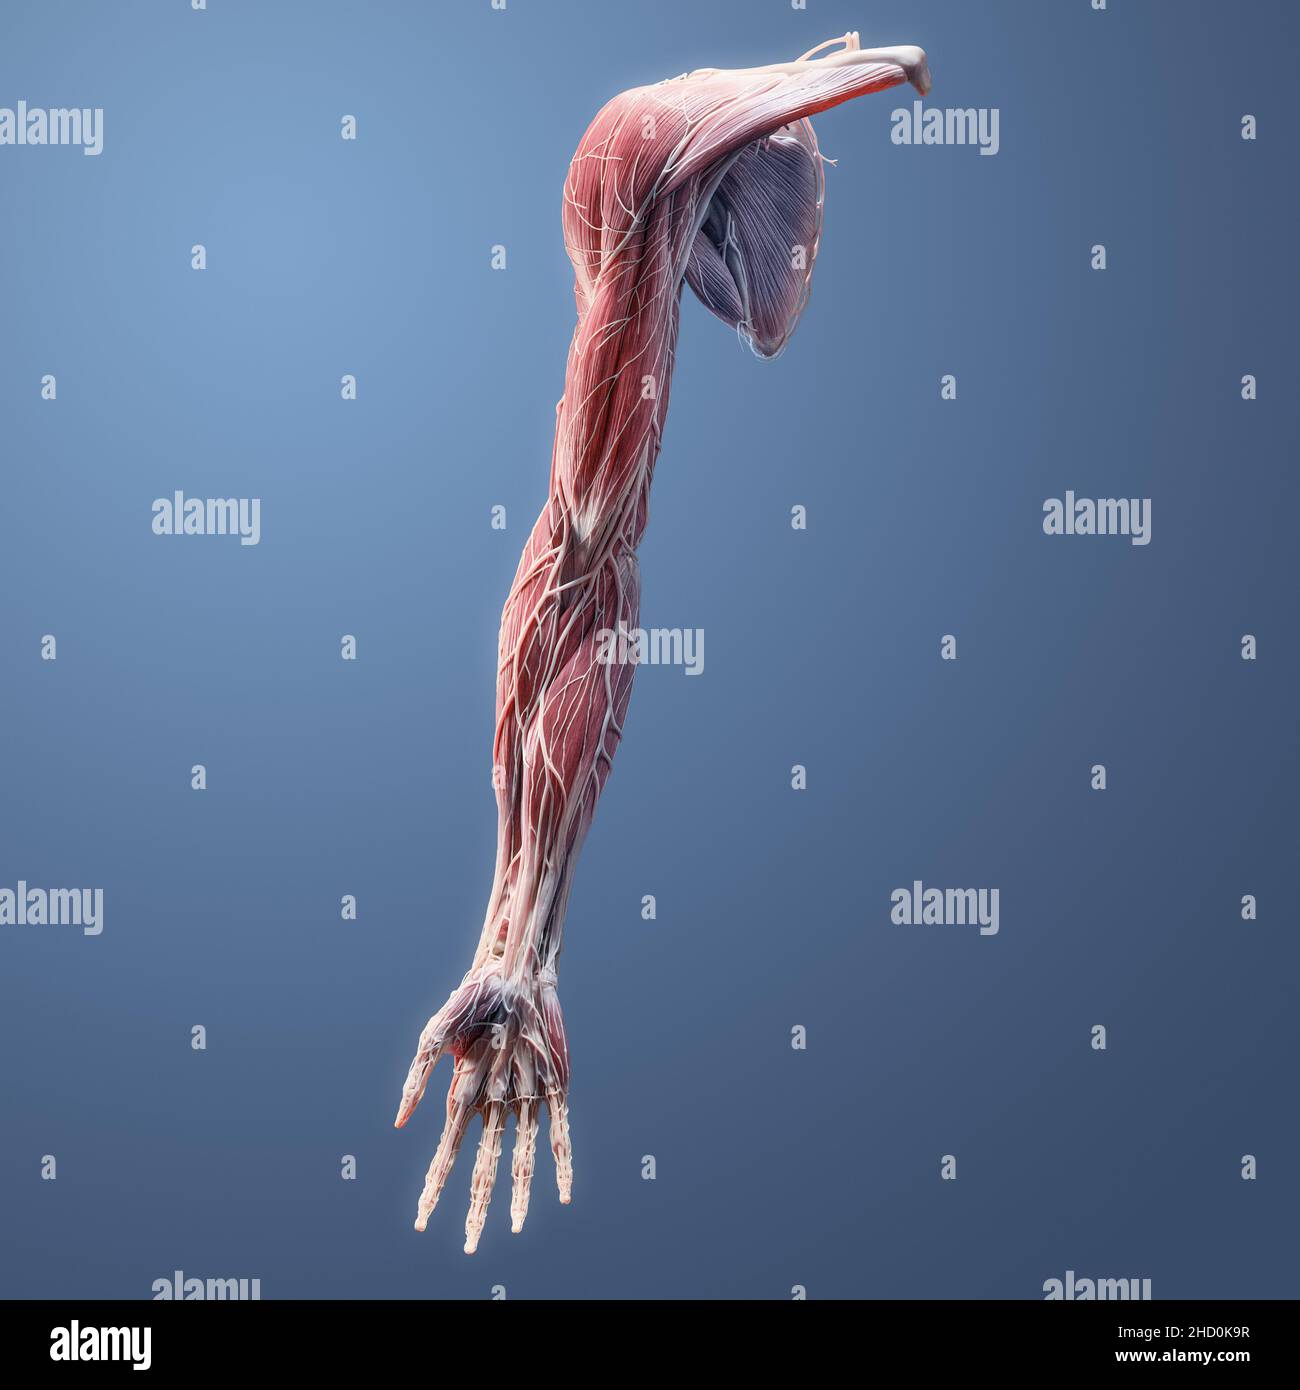 Voll muskulär, Skelett, Nerven, Gefäß, Band, Sehnenanatomie der menschlichen oberen Extremität auf blauem Hintergrund Stockfoto